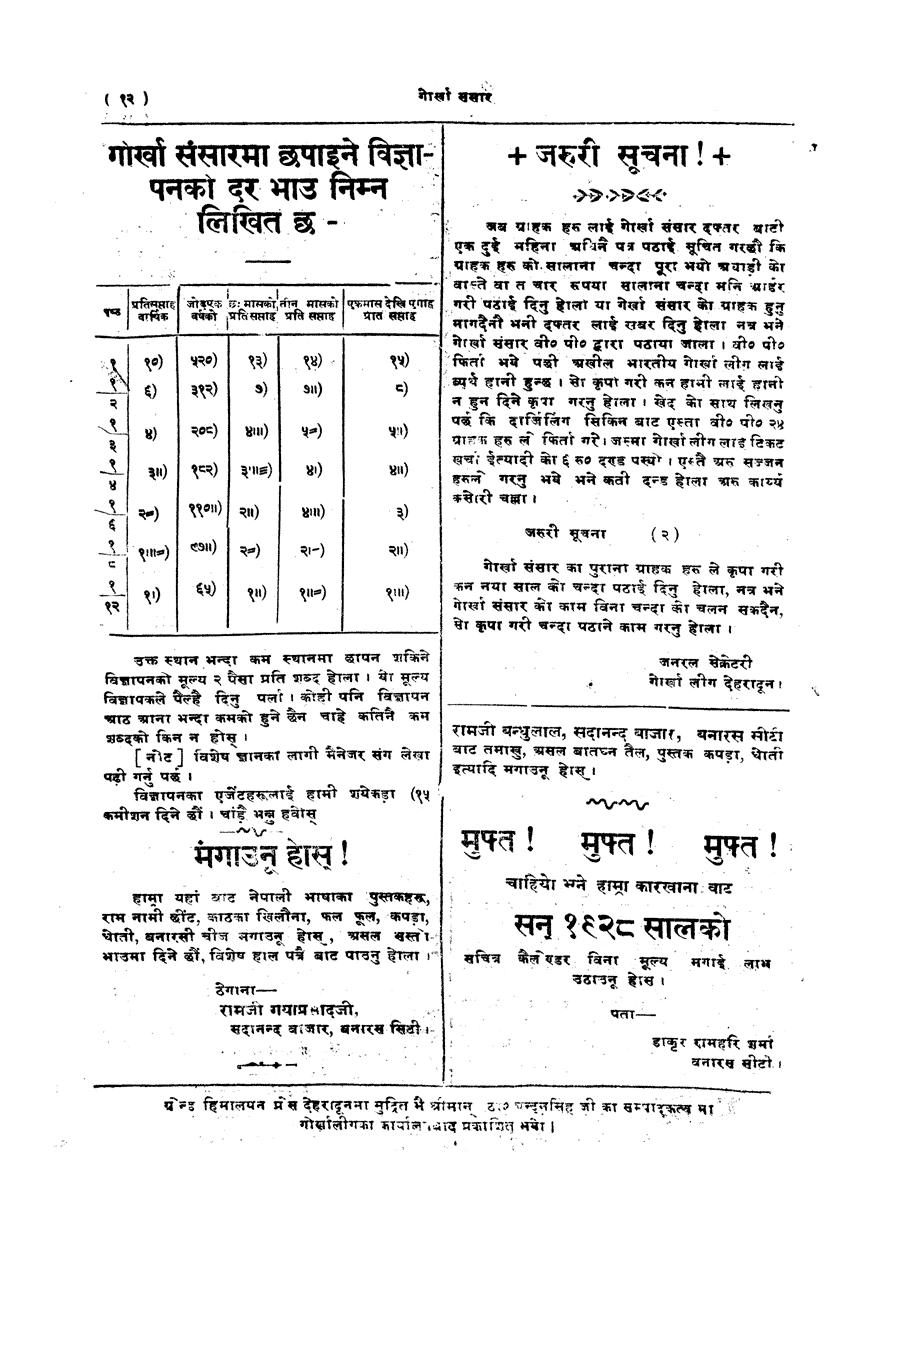 Gorkha Sansar, 25 May 1928, page 12